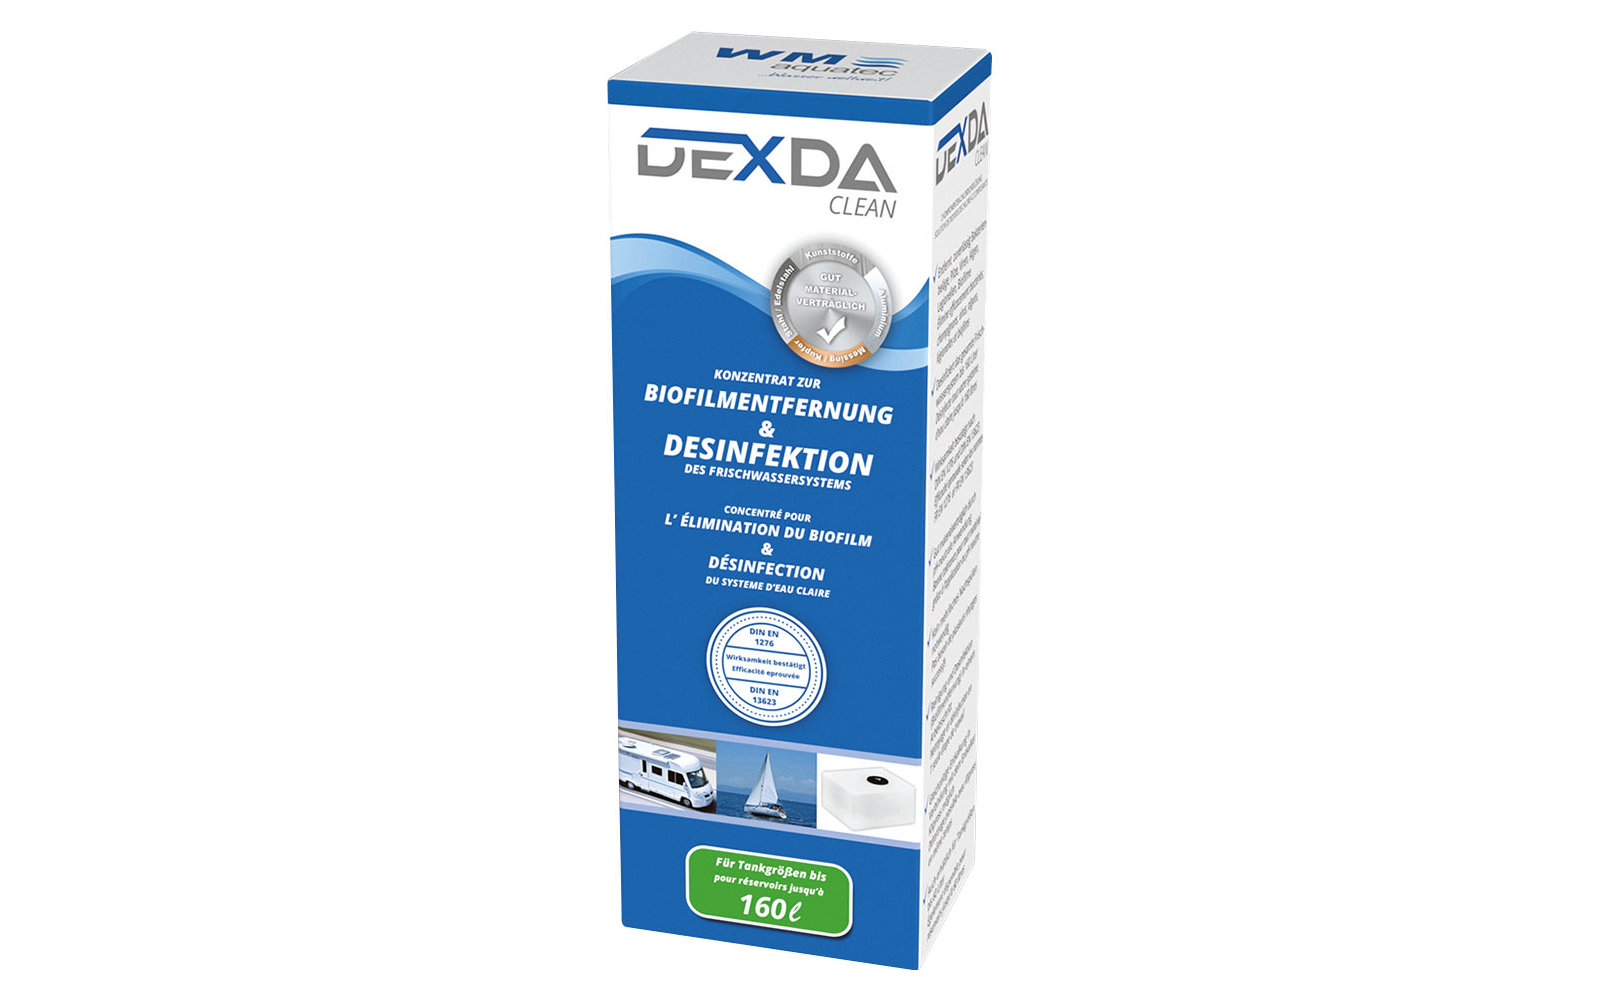 DEXDA clean Reinigungs- und Desinfetktionsmittel (100ml)